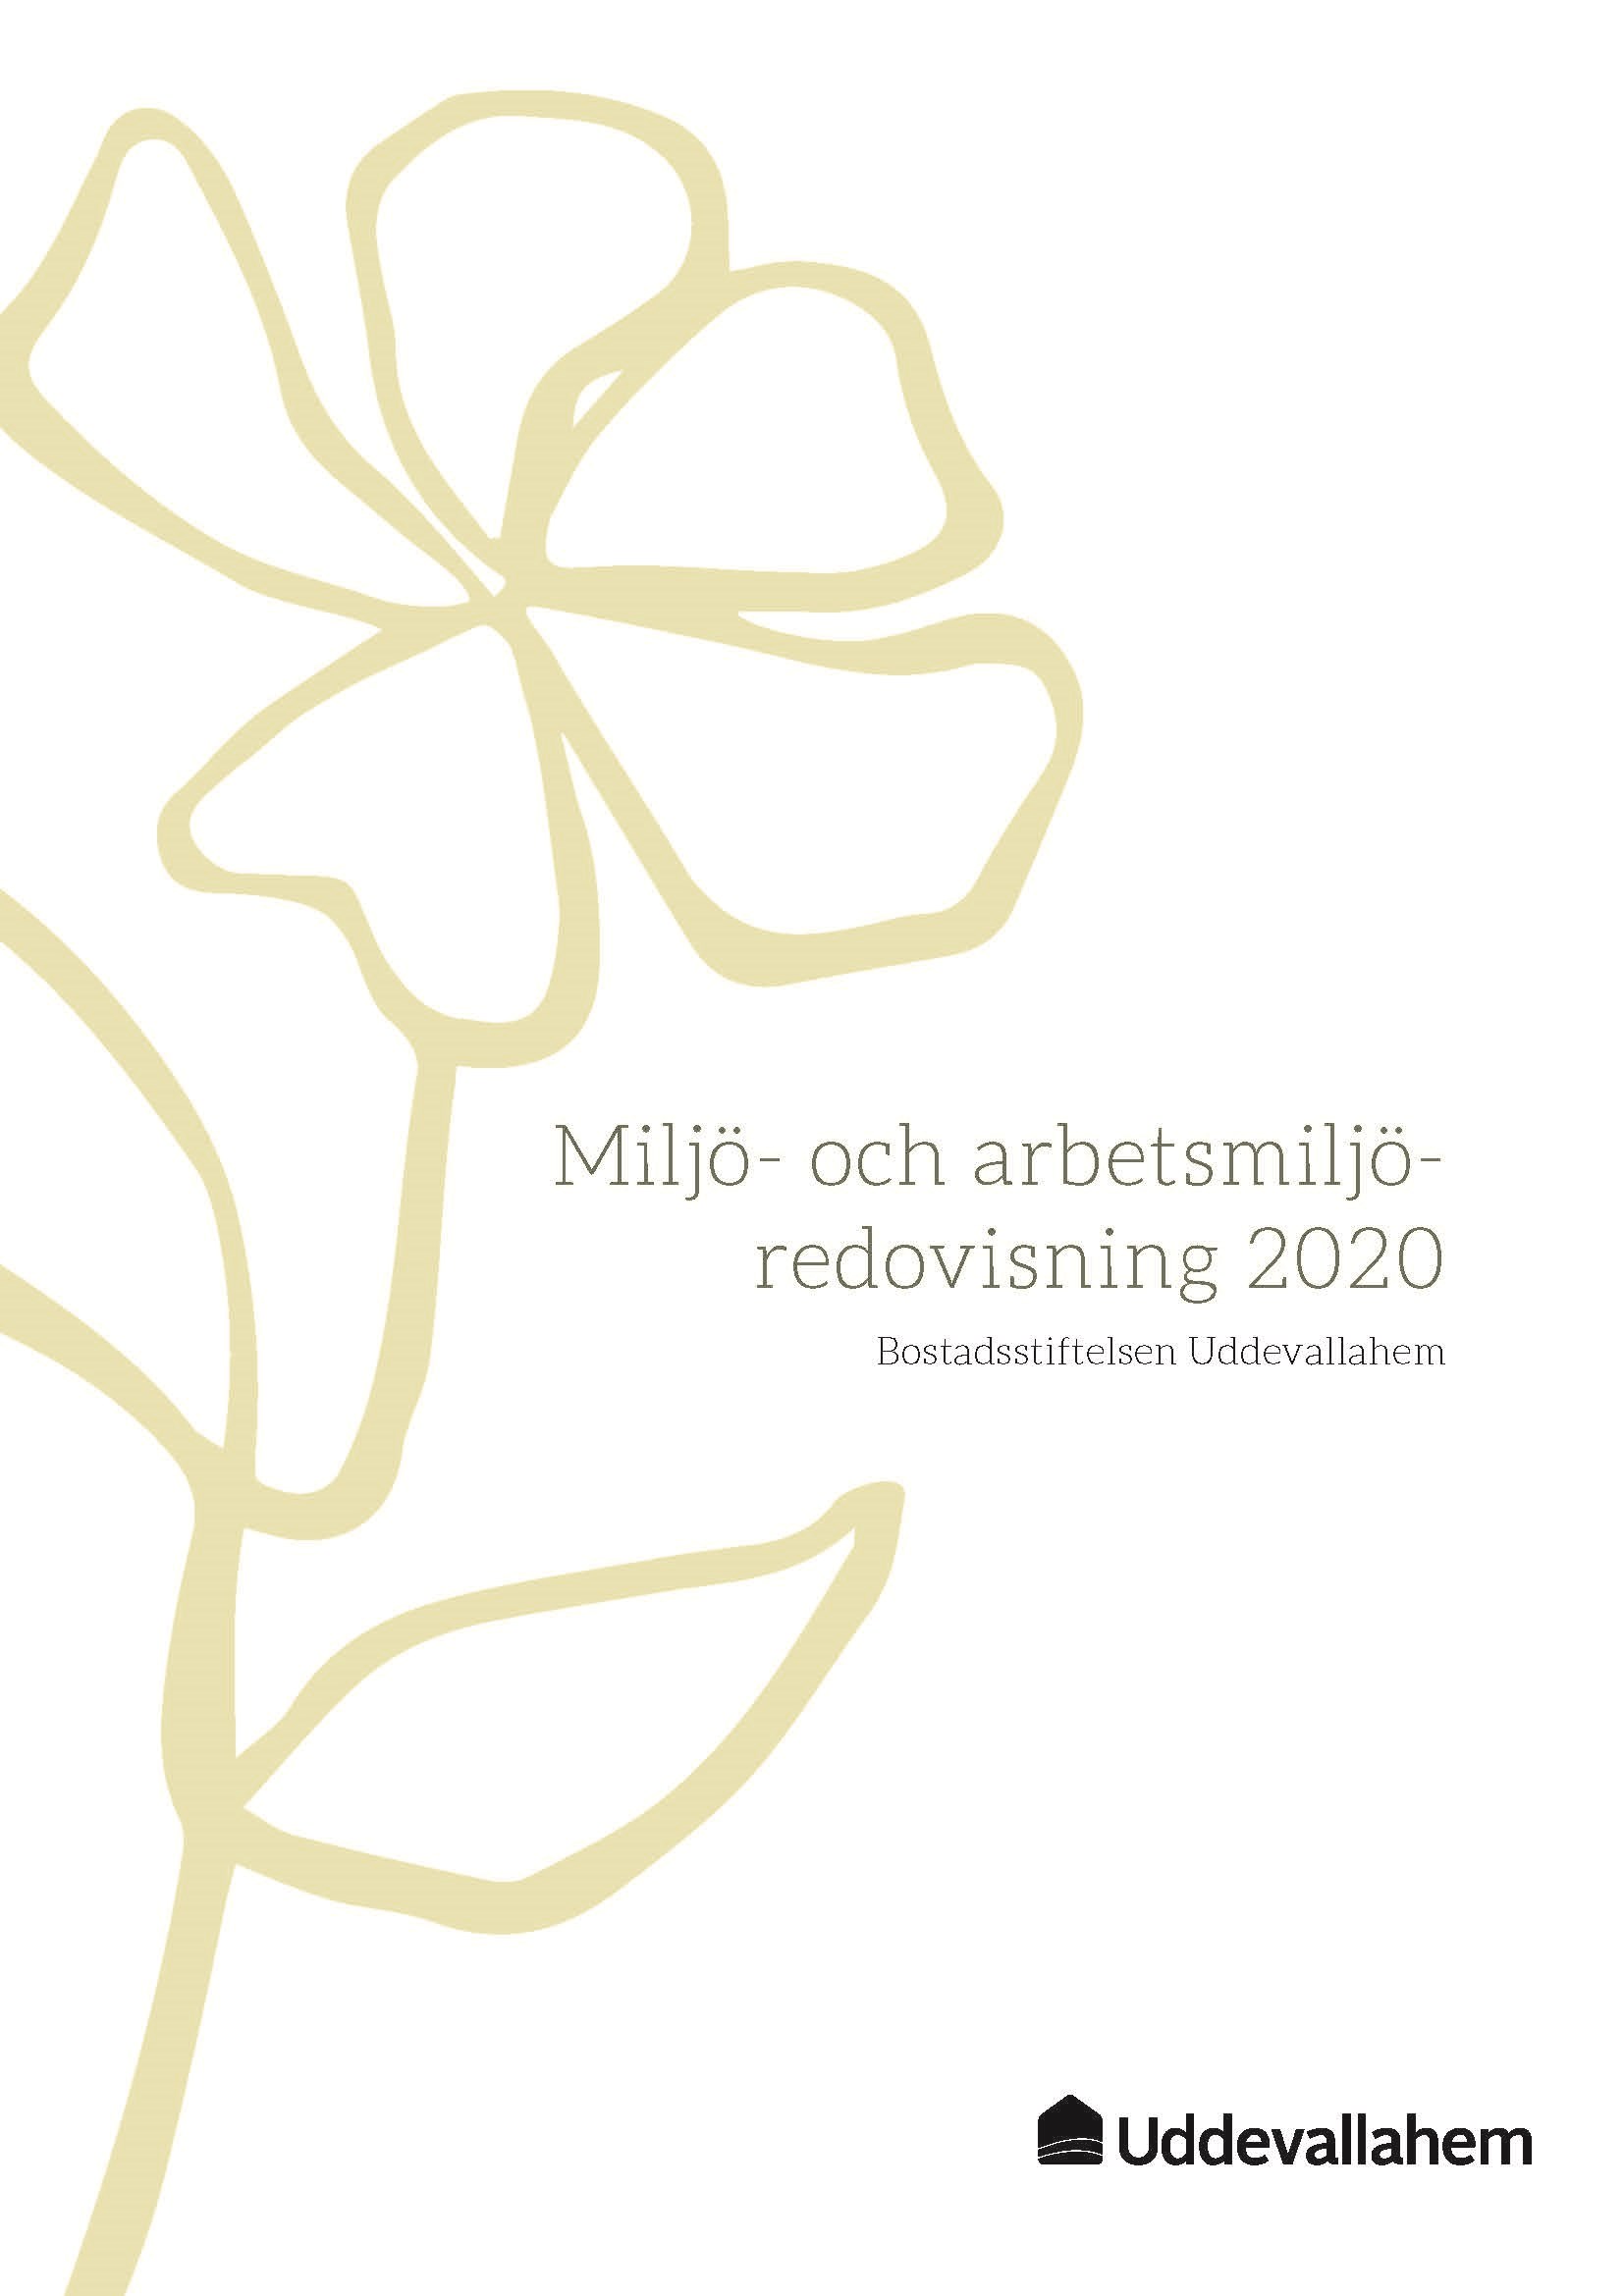 Omslag Uddevallahems miljö- och arbetsmiljöredovisning 2020